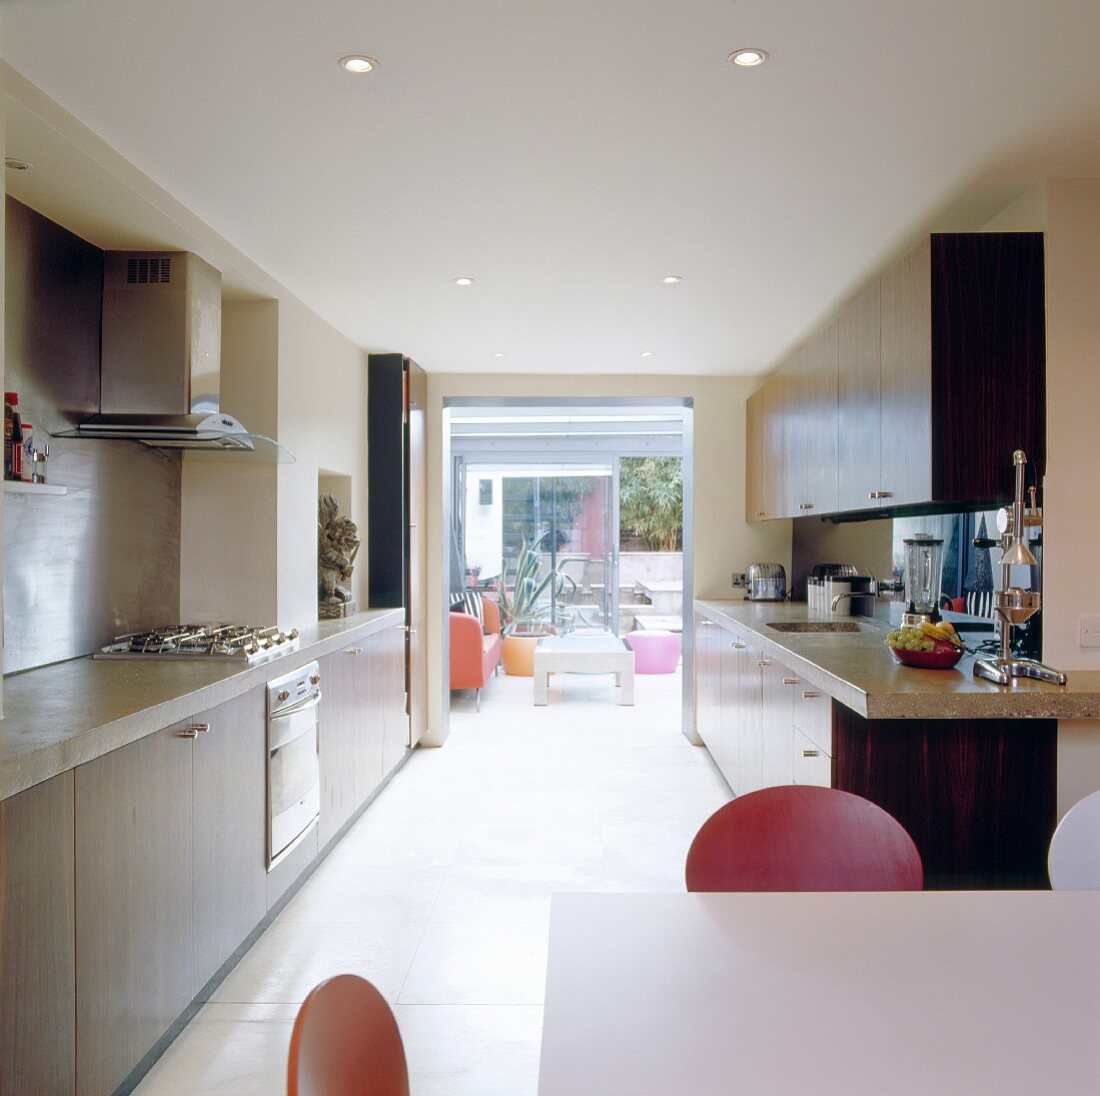 Küchenflucht mit offener Terrassentür und Blick auf farbigen Kleinmöbeln